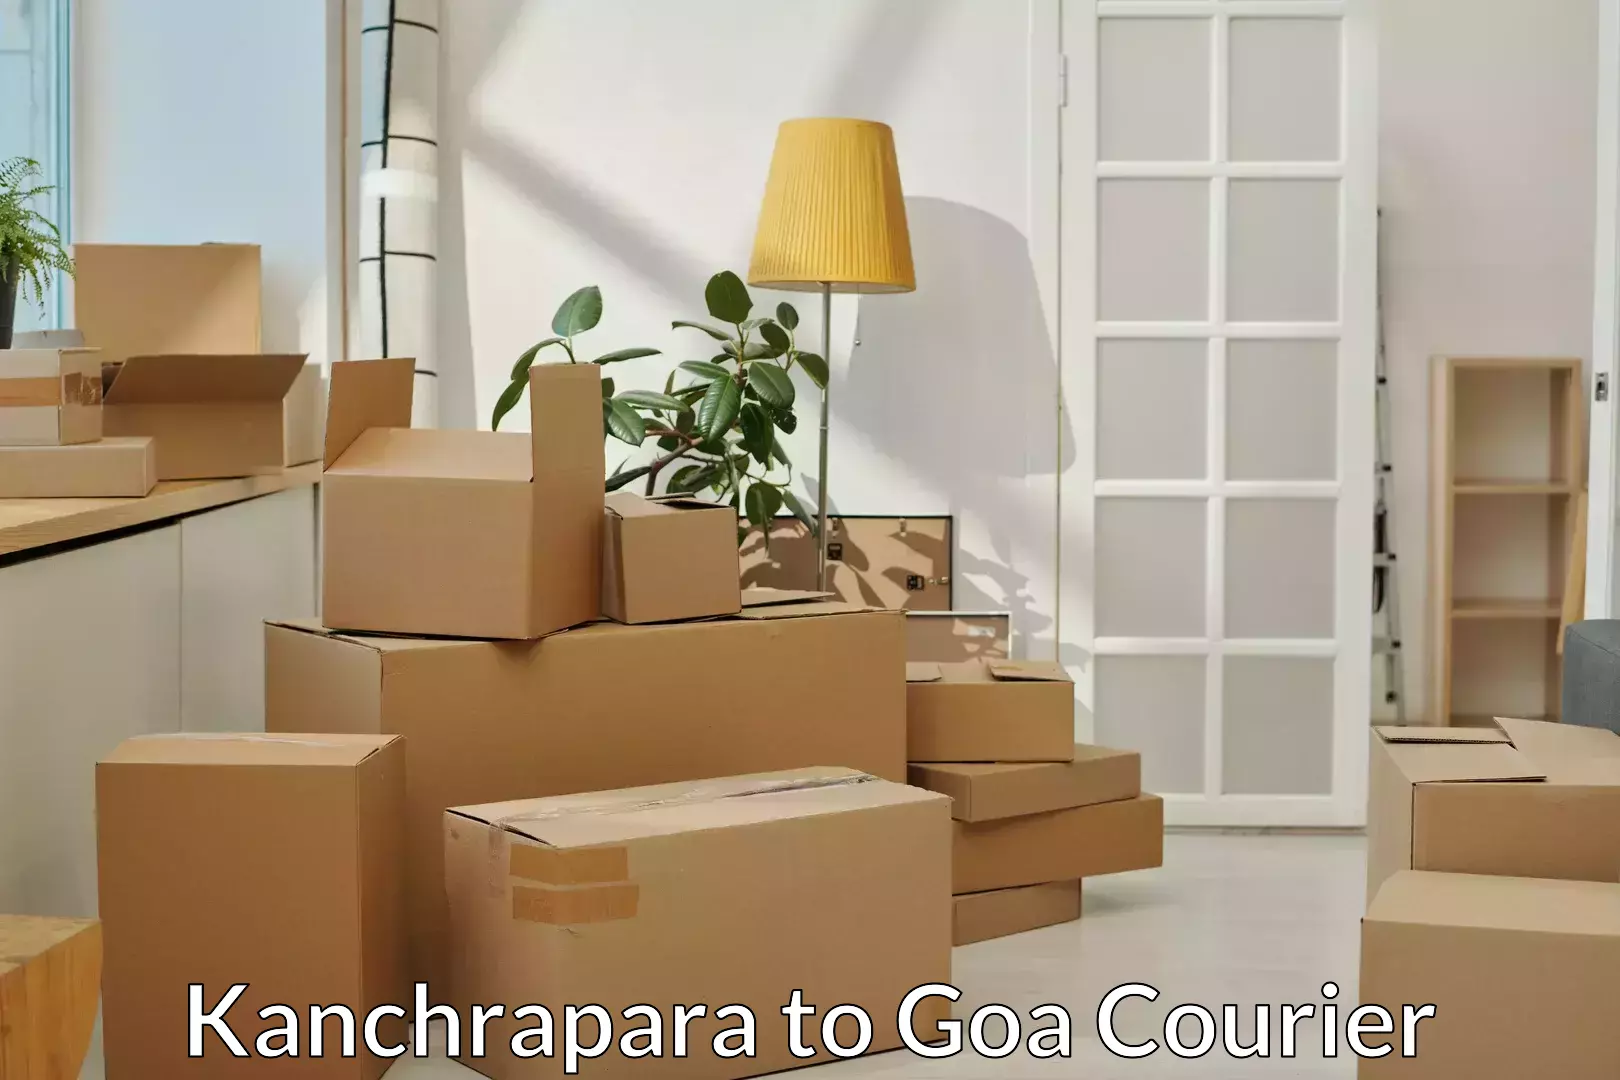 Furniture transport and storage Kanchrapara to NIT Goa